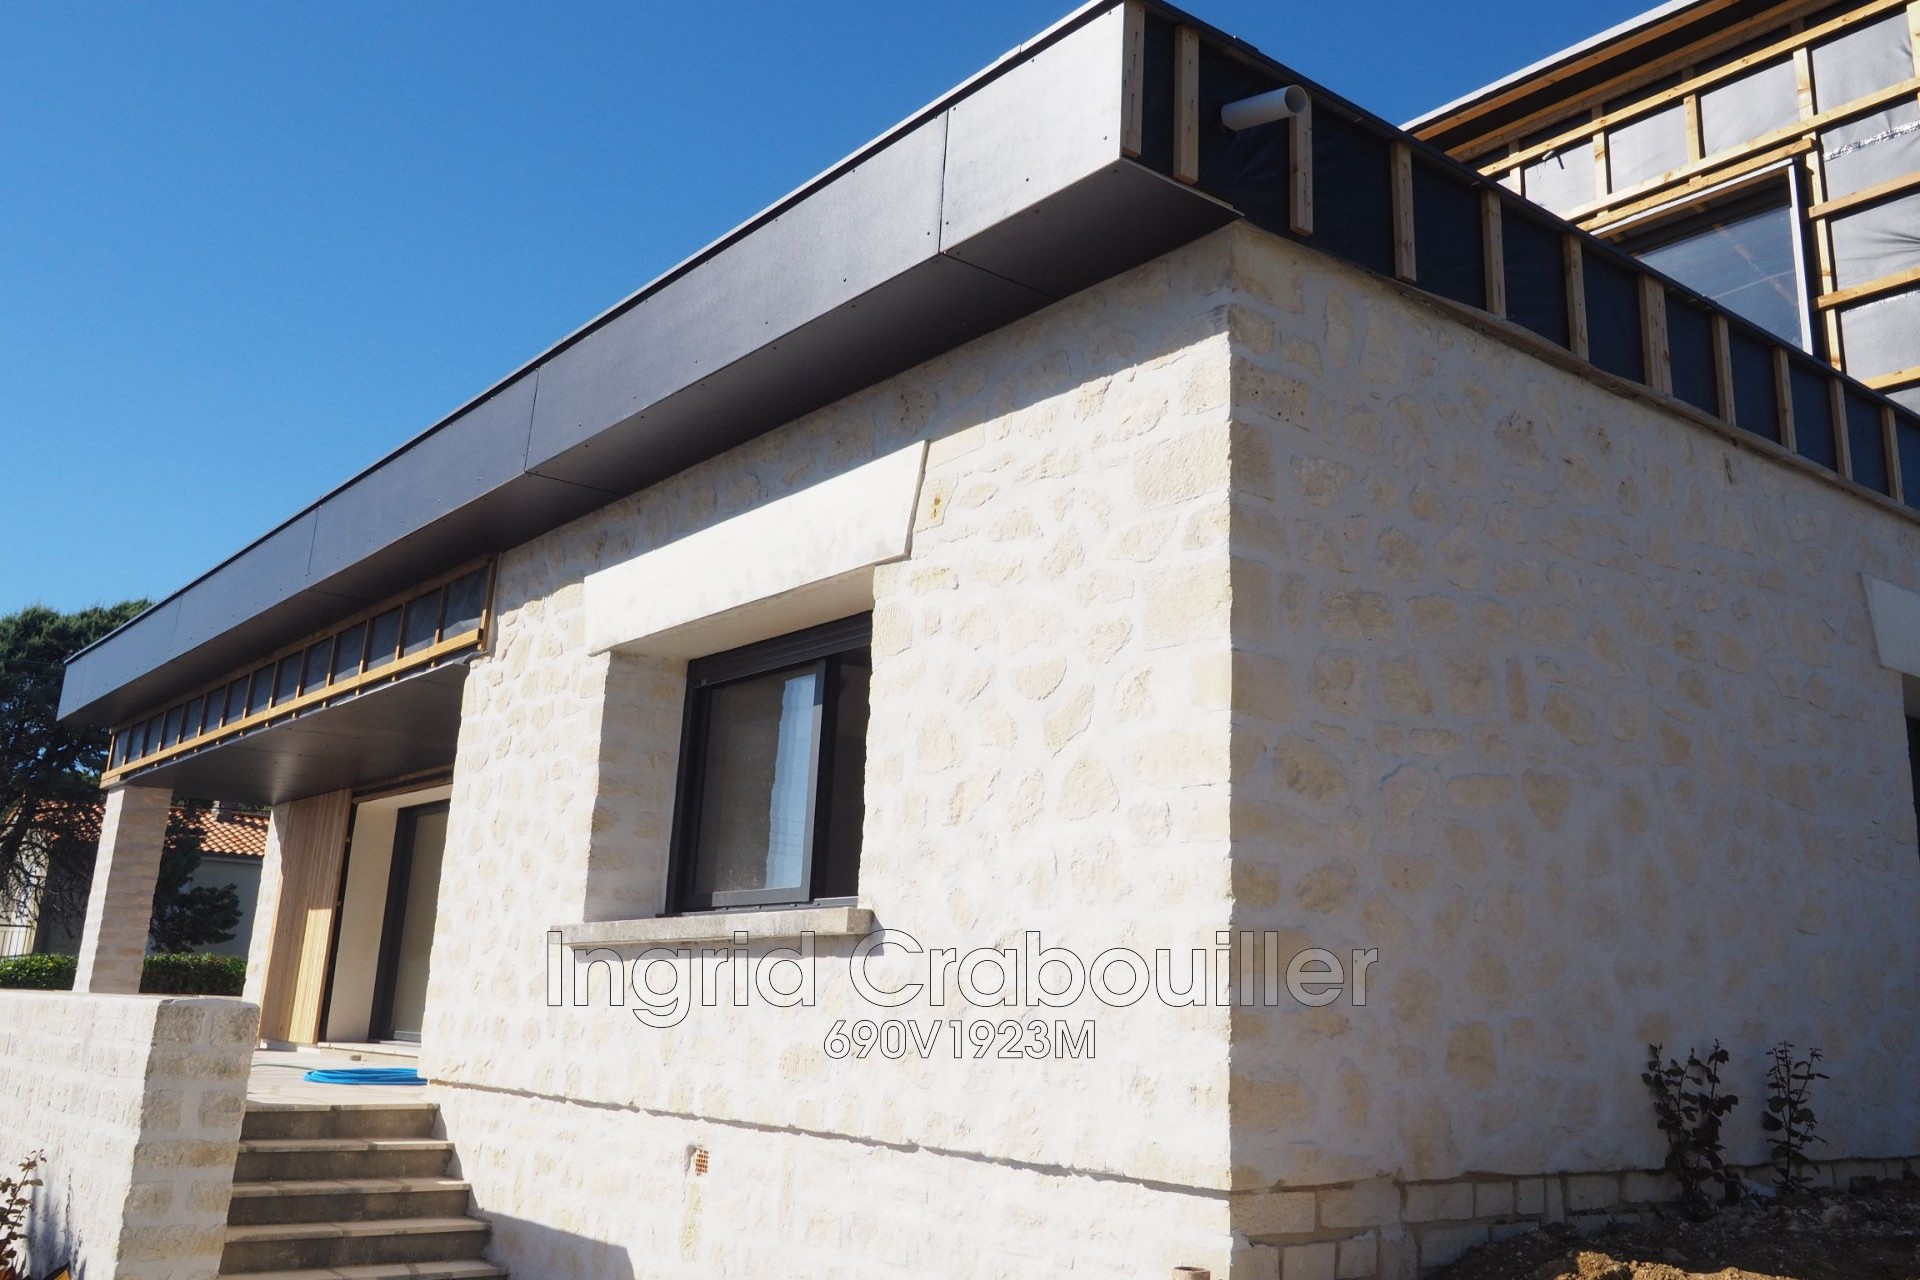 Vente maison contemporaine Vaux-sur-Mer - réf. 690V1923M